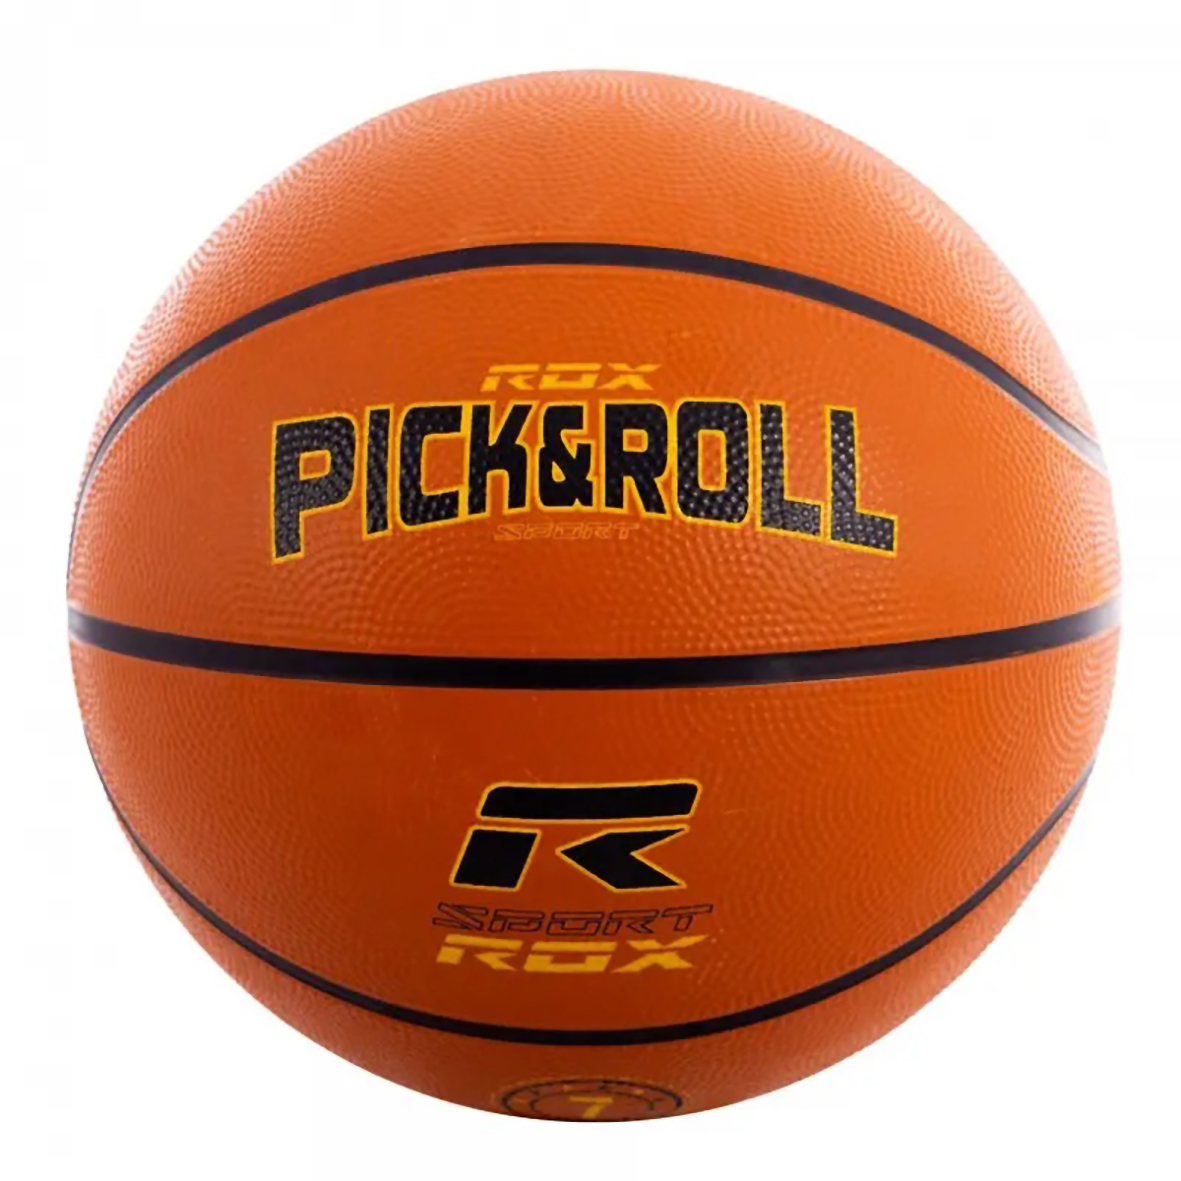 ROX PICK&ROLL NYLON BASKETBALL BALL, SIZE 7.